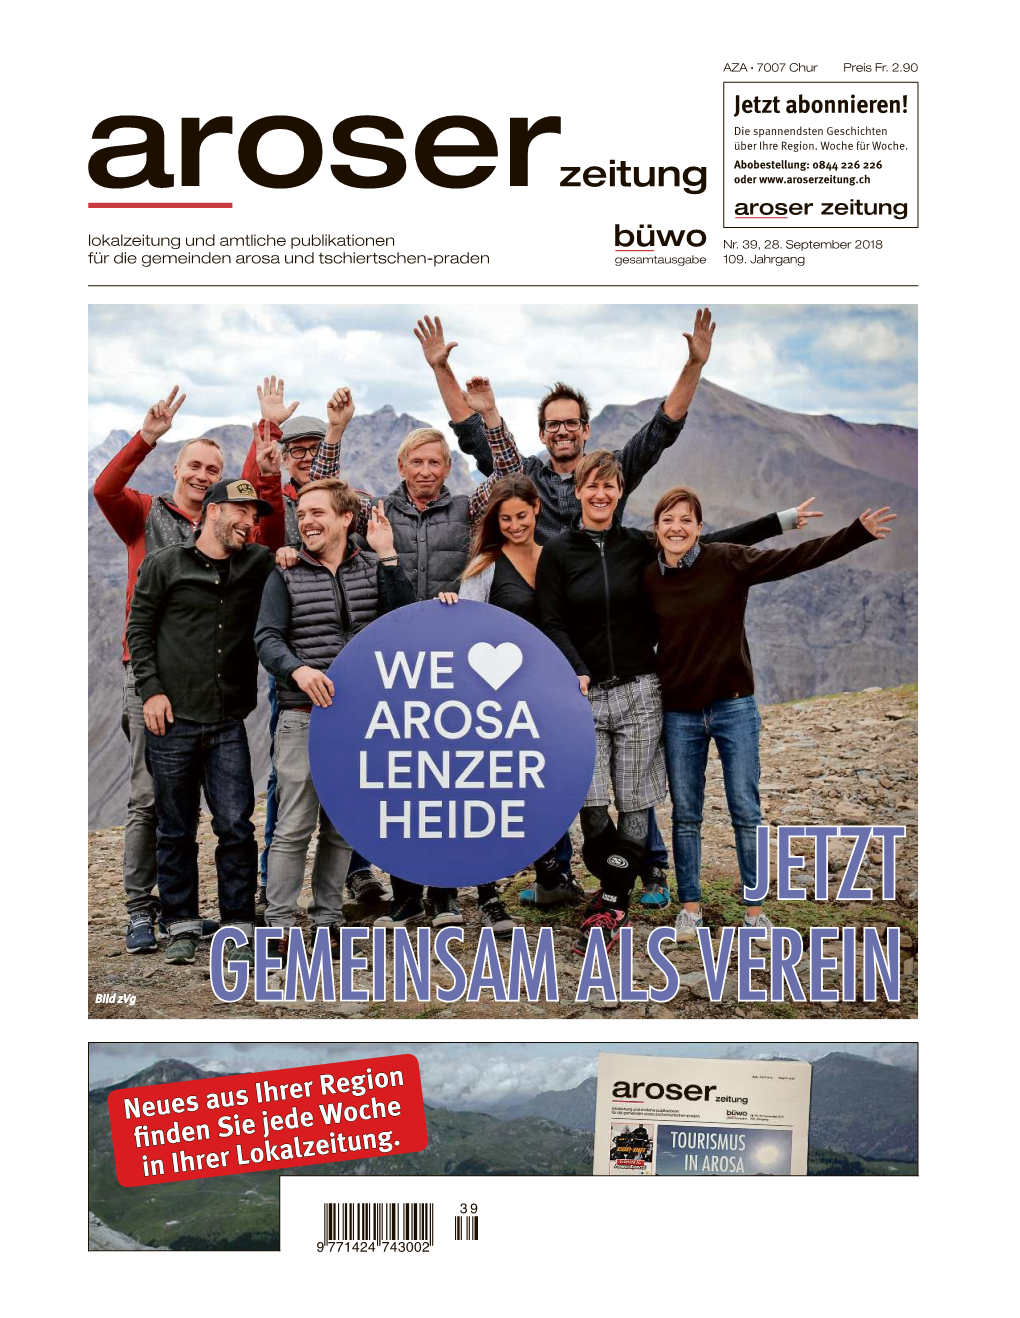 Aroser Zeitung, 28. September 2018